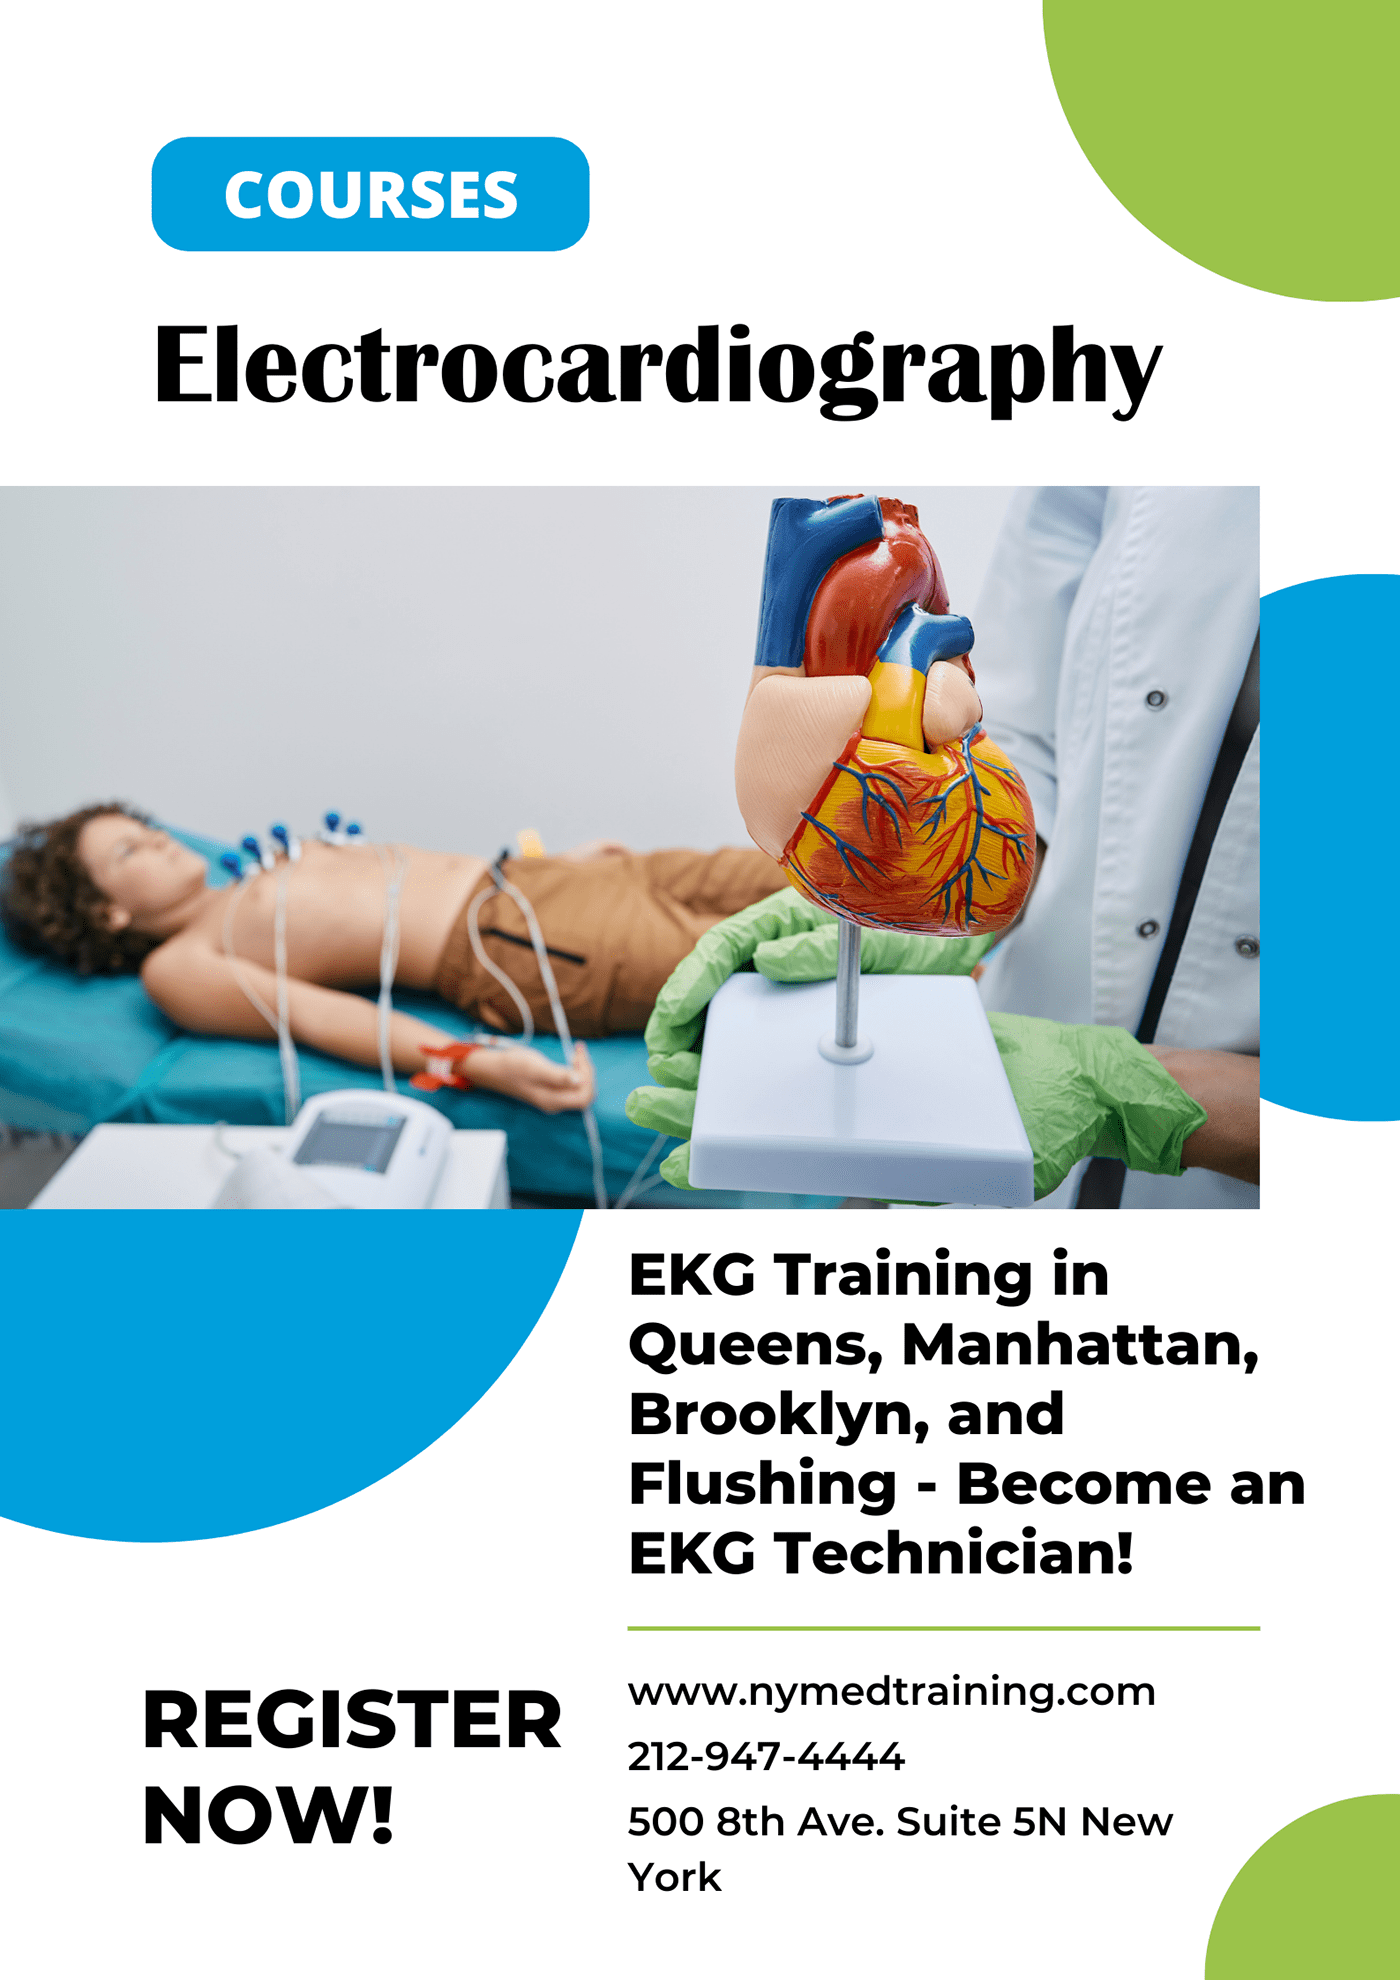 EKG Courses NYC EKG Training New York NY EKG Training